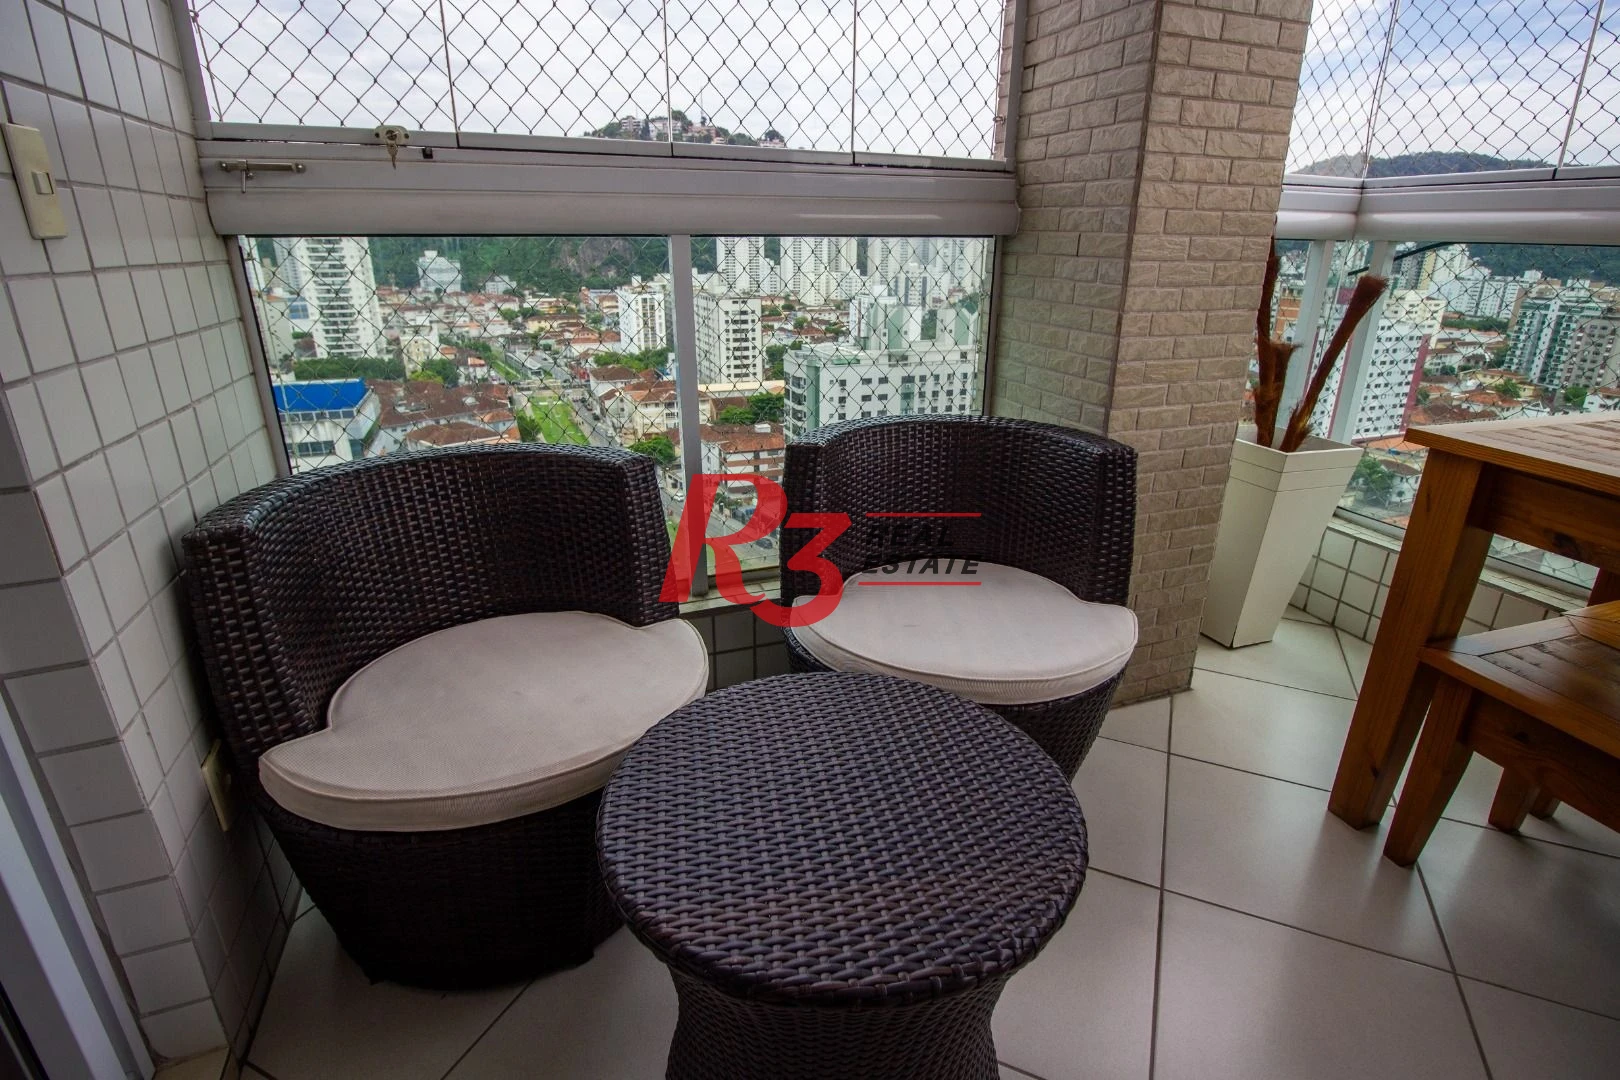 Apartamento Duplex com 3 dormitórios à venda, 127 m² por R$ 1.300.000,00 - Pompéia - Santos/SP